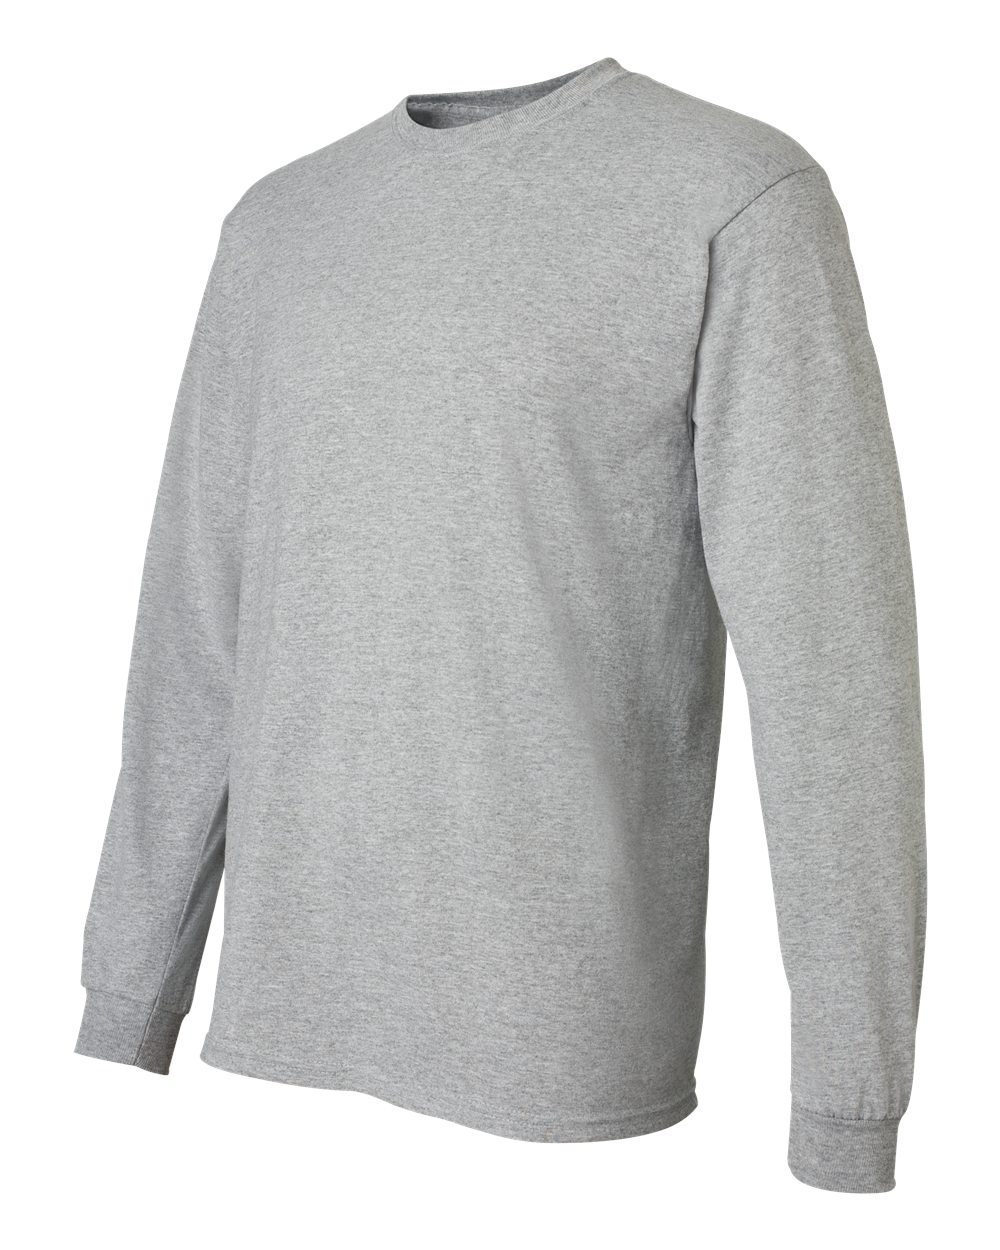 ss Gildan 8400 DryBlend 50/50 Long Sleeve T-Shirt